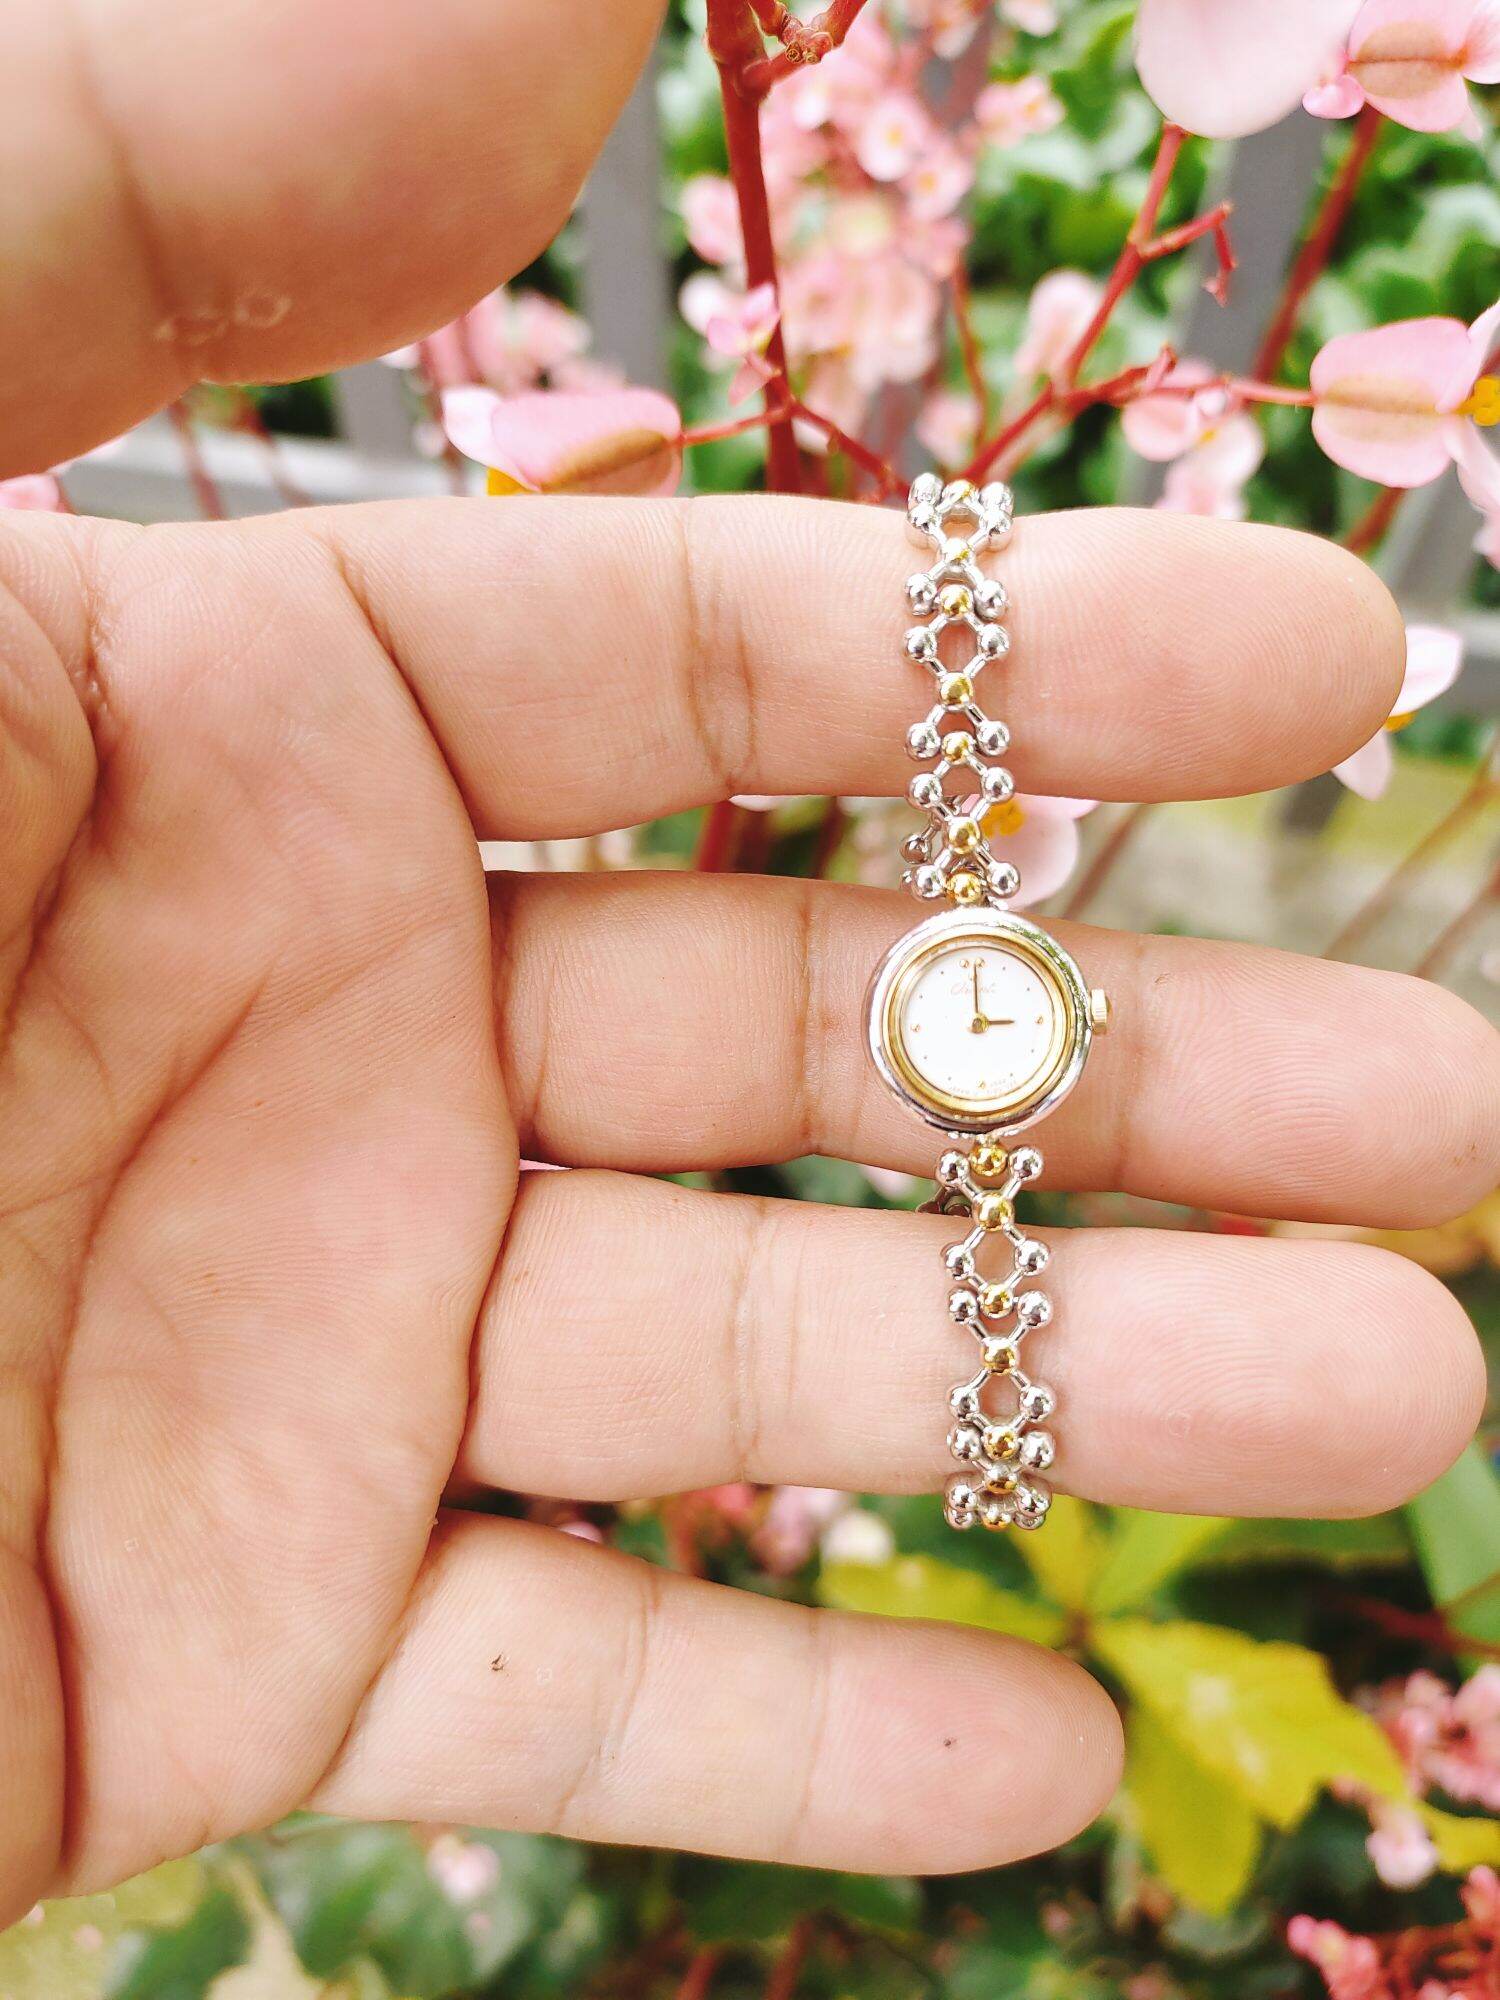 Đồng hồ Orient lắc nữ siêu đẹp, hình thức đẹp size nhỏ 14mm thumbnail